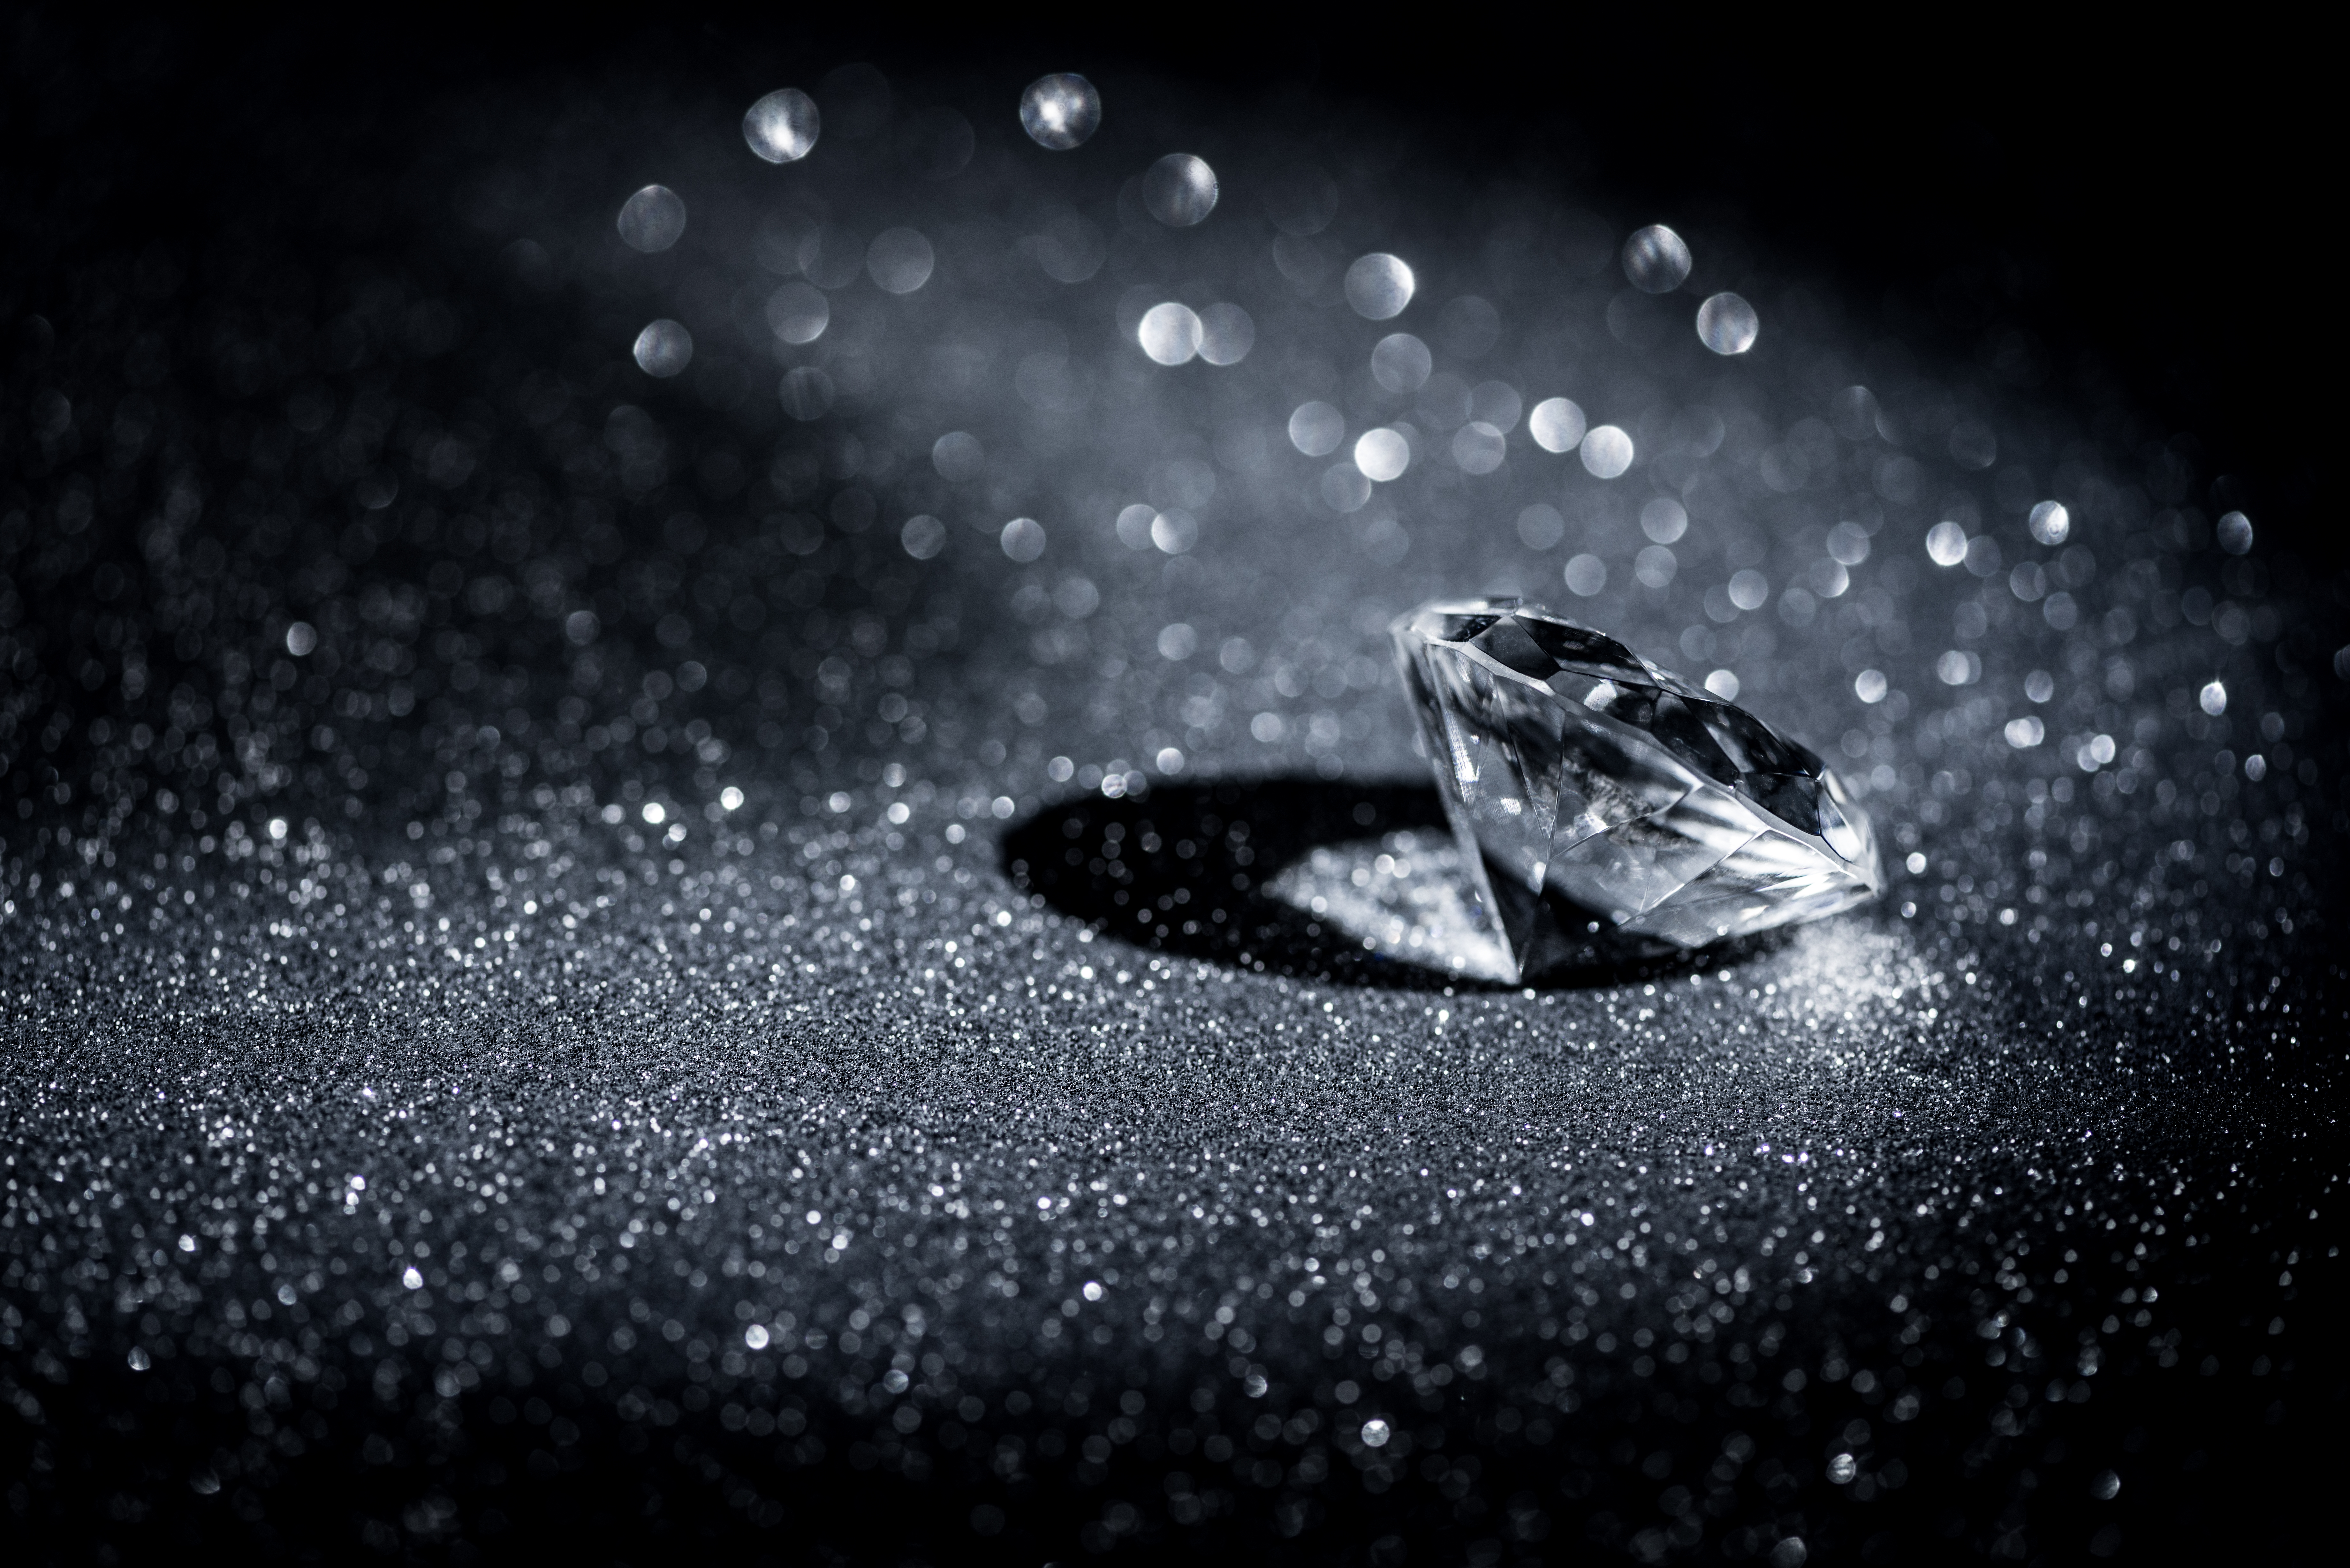 <p><strong>Флорентинският диамант</strong></p>

<p>Със своите 133 карата, флорентинският диамант е &bdquo;известен като най-големия розов скъпоценен камък в света&ldquo;. Произходът на диаманта и днешното местонахождение са неясни. През ноември 1918г. той е притежаван от кралското семейство на Хабсбургите, които се оказват от губещата страна на Първата световна война. Те депозират камъка в швейцарска банка и го поверяват на австрийски адвокат на име Бруно Щайнер, който помага на семейството да продаде голяма част от бижутата си. Не е ясно какво се случва след това. Възможно е флорентинският диамант да е преработен някъде след Първата световна и сега да бъде парчета от по-малки диаманти.</p>